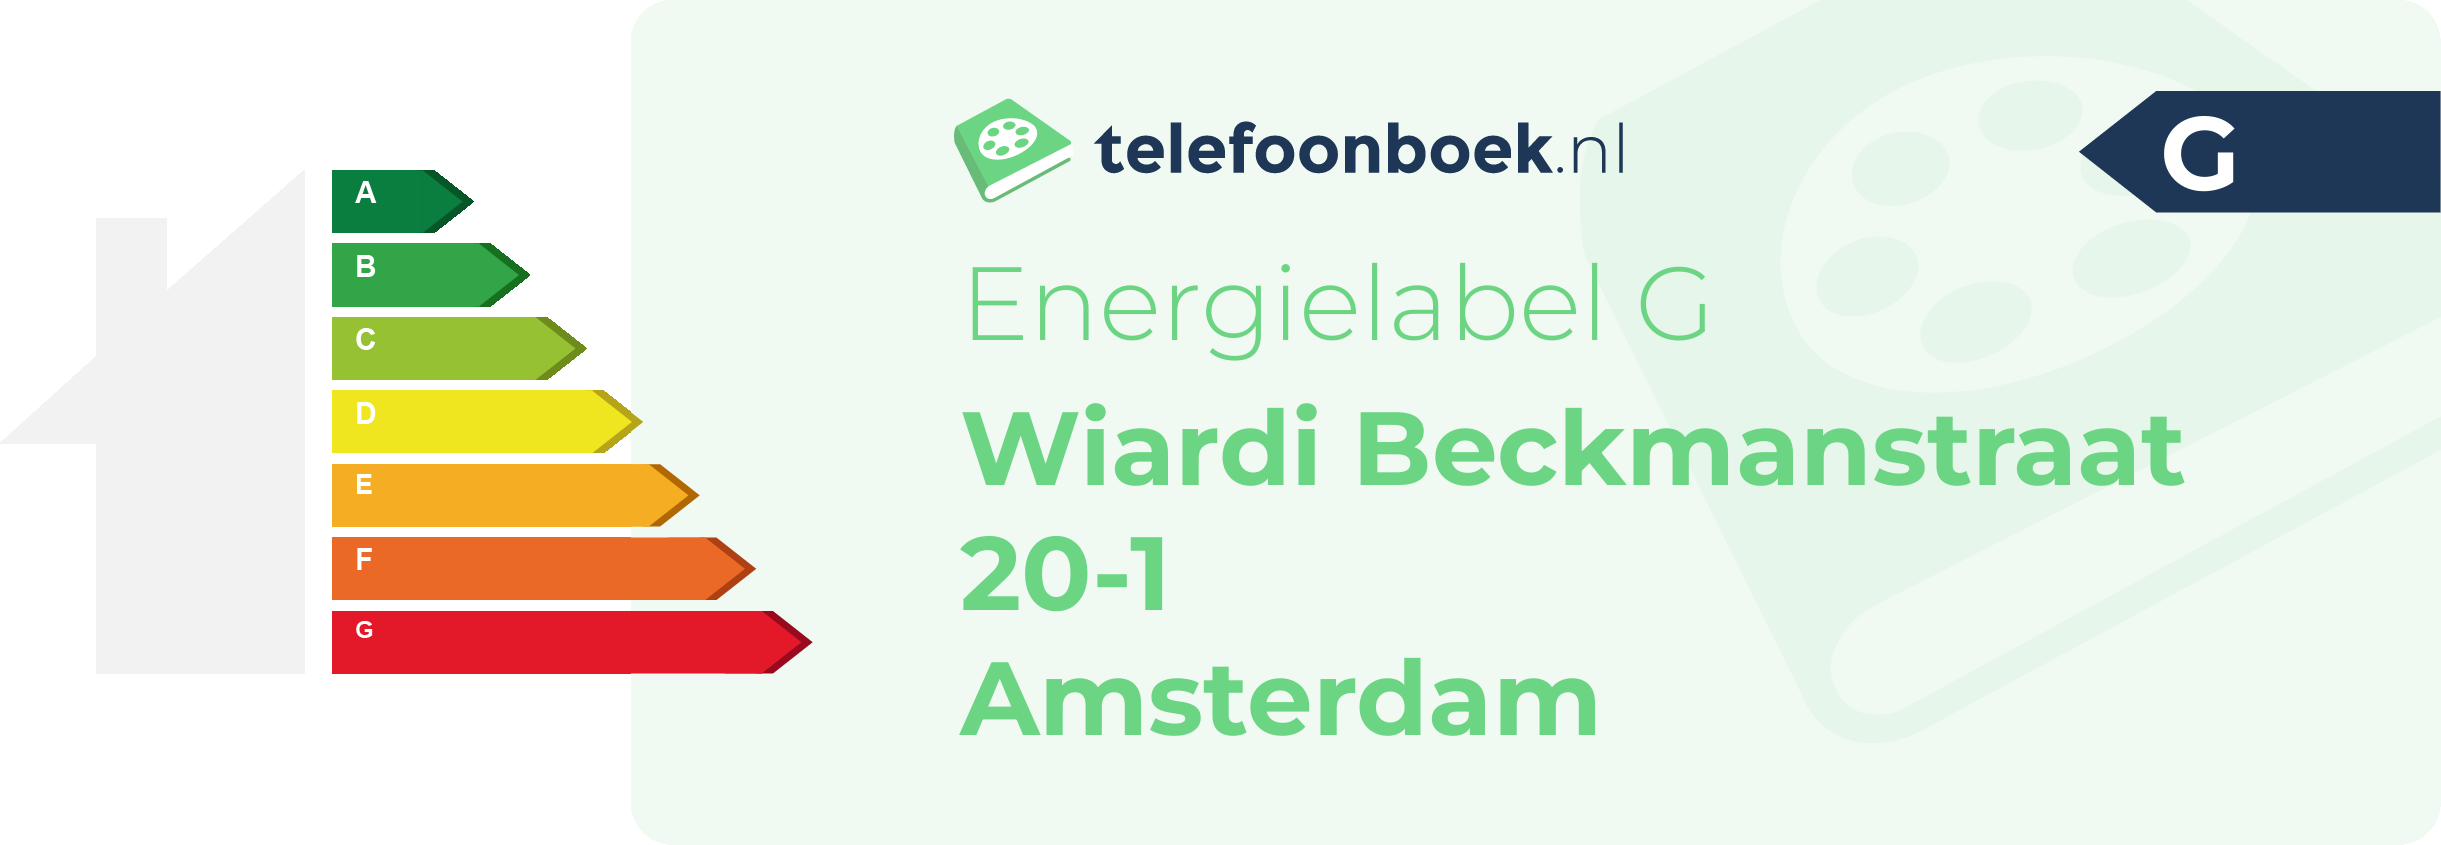 Energielabel Wiardi Beckmanstraat 20-1 Amsterdam